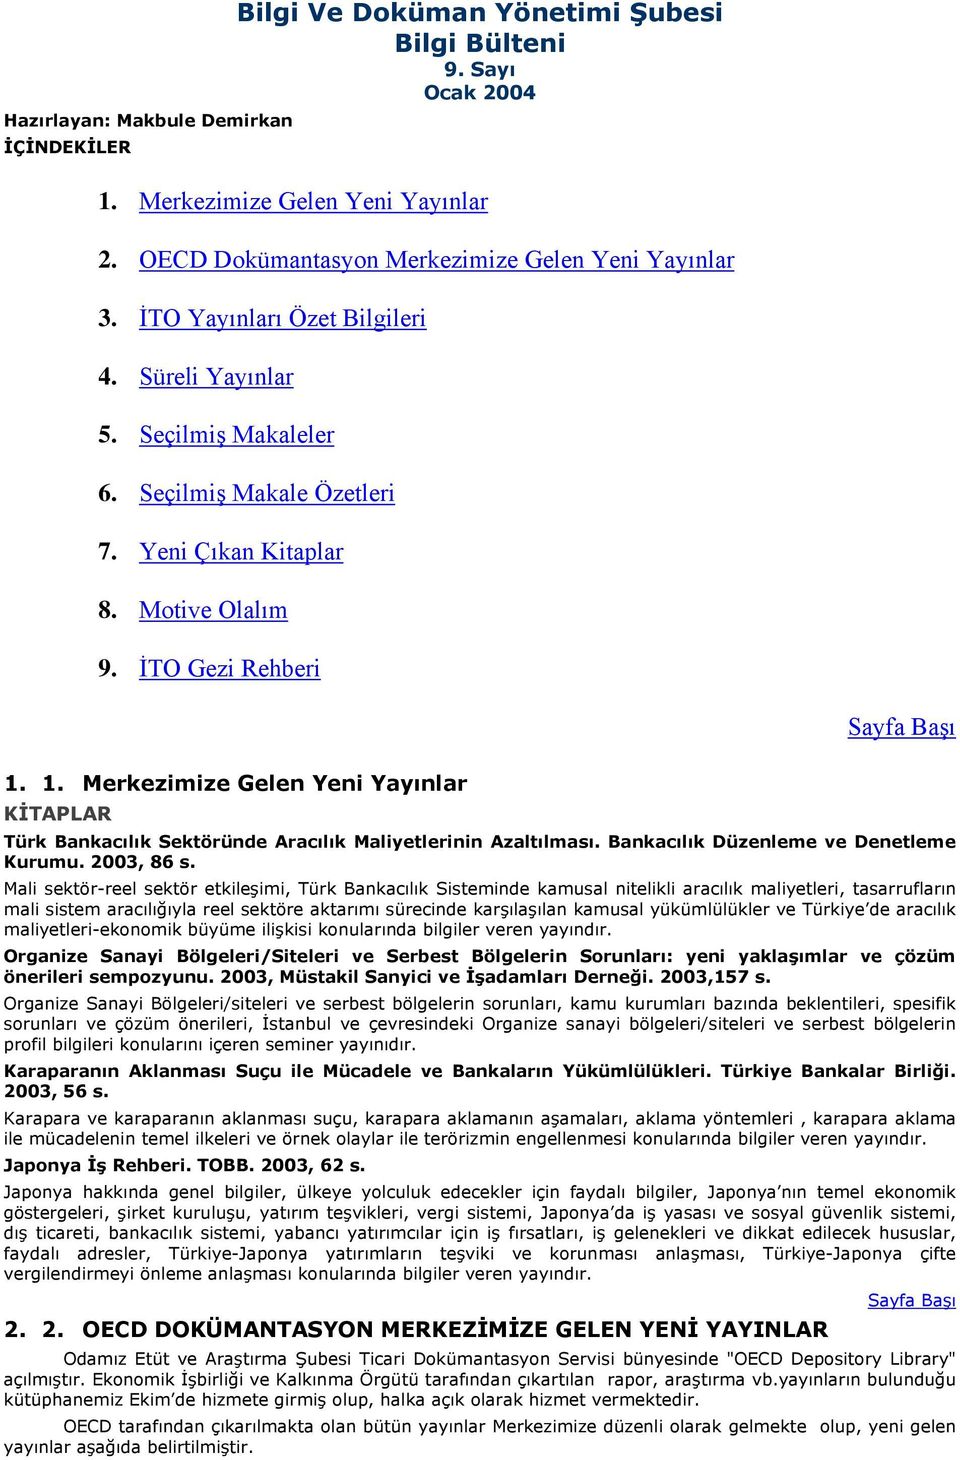 1. Merkezimize Gelen Yeni Yayınlar KİTAPLAR Türk Bankacılık Sektöründe Aracılık Maliyetlerinin Azaltılması. Bankacılık Düzenleme ve Denetleme Kurumu. 2003, 86 s.